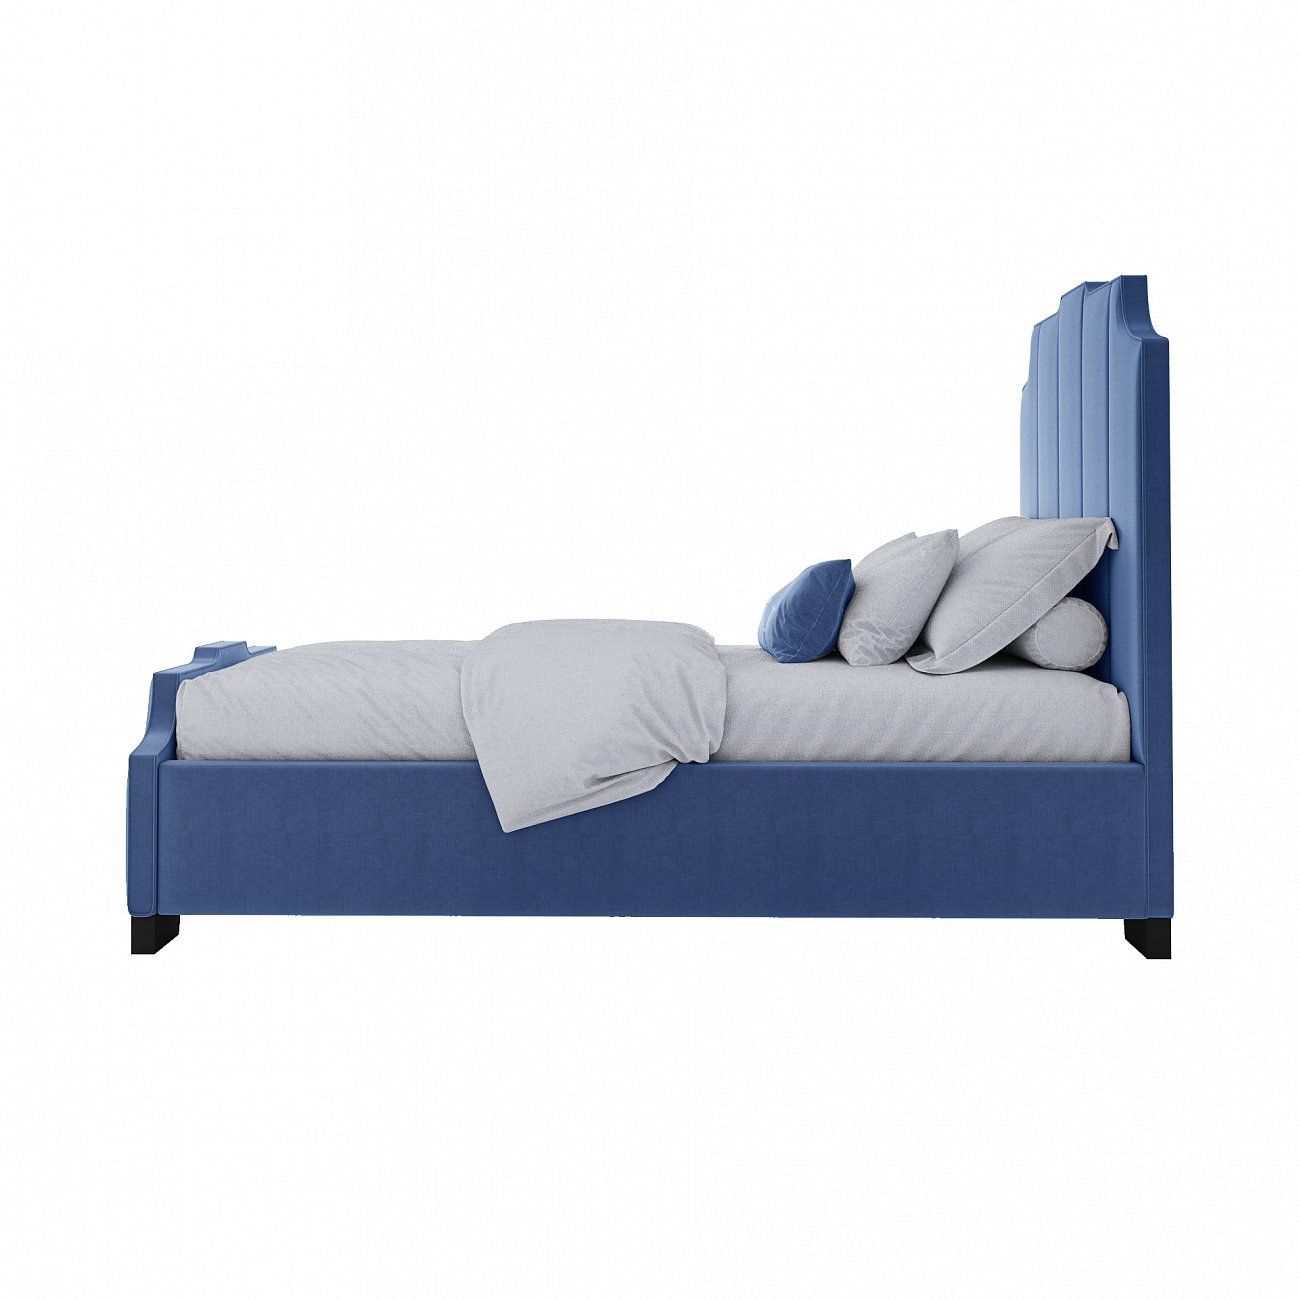 Кровать Bony односпальная с мягким изголовьем 90х200 см синяя